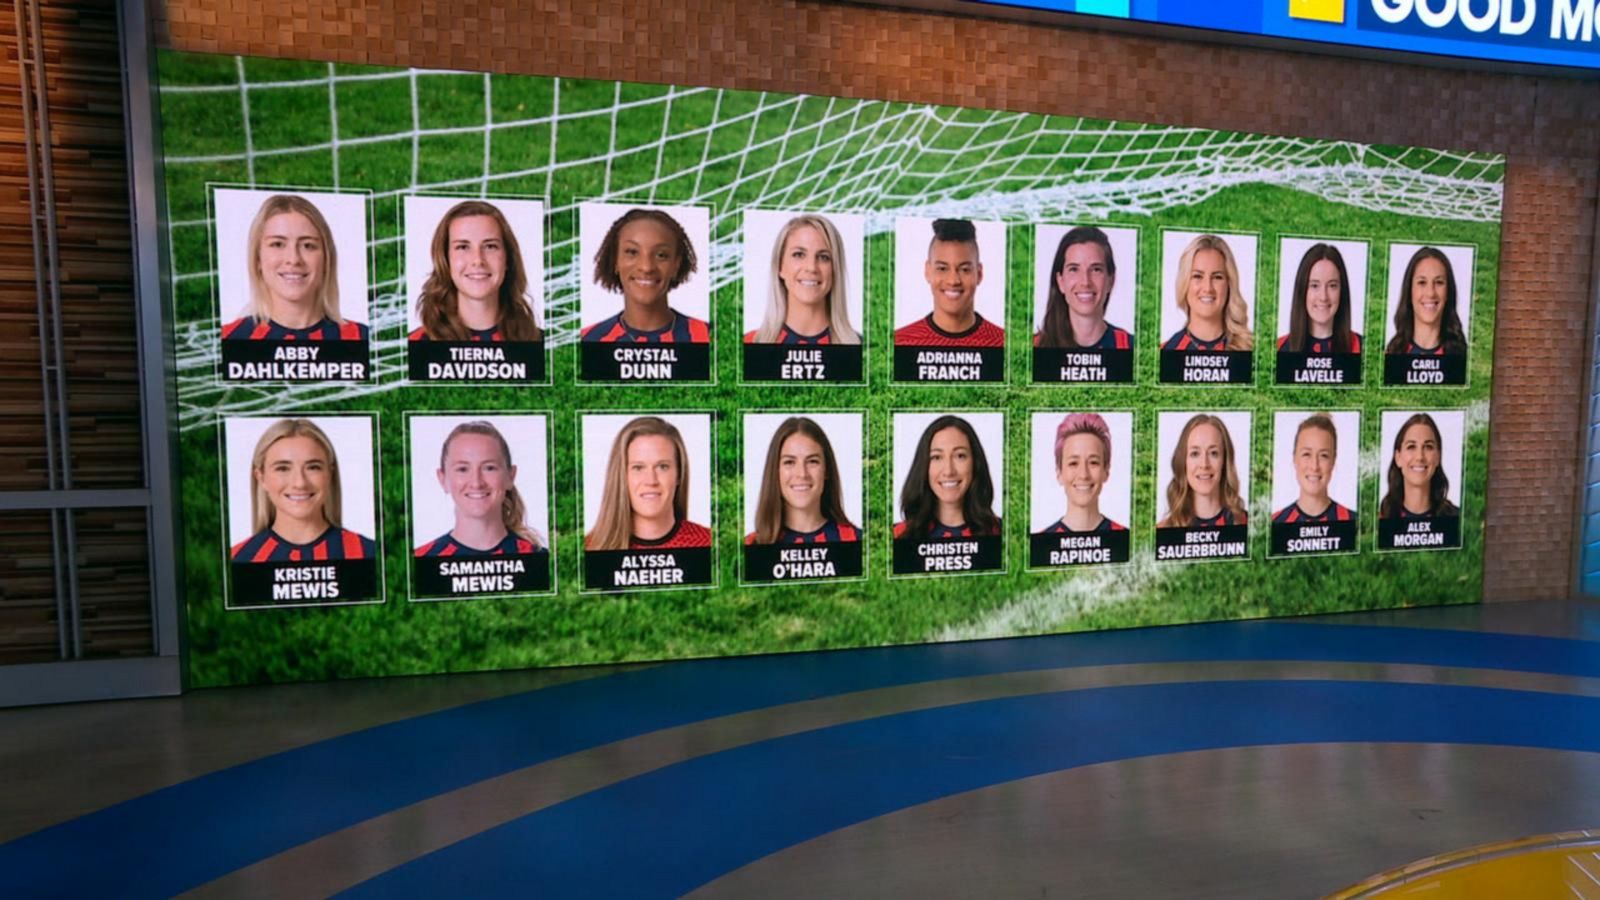 U-18 Women's National Team  U.S. Soccer Official Website